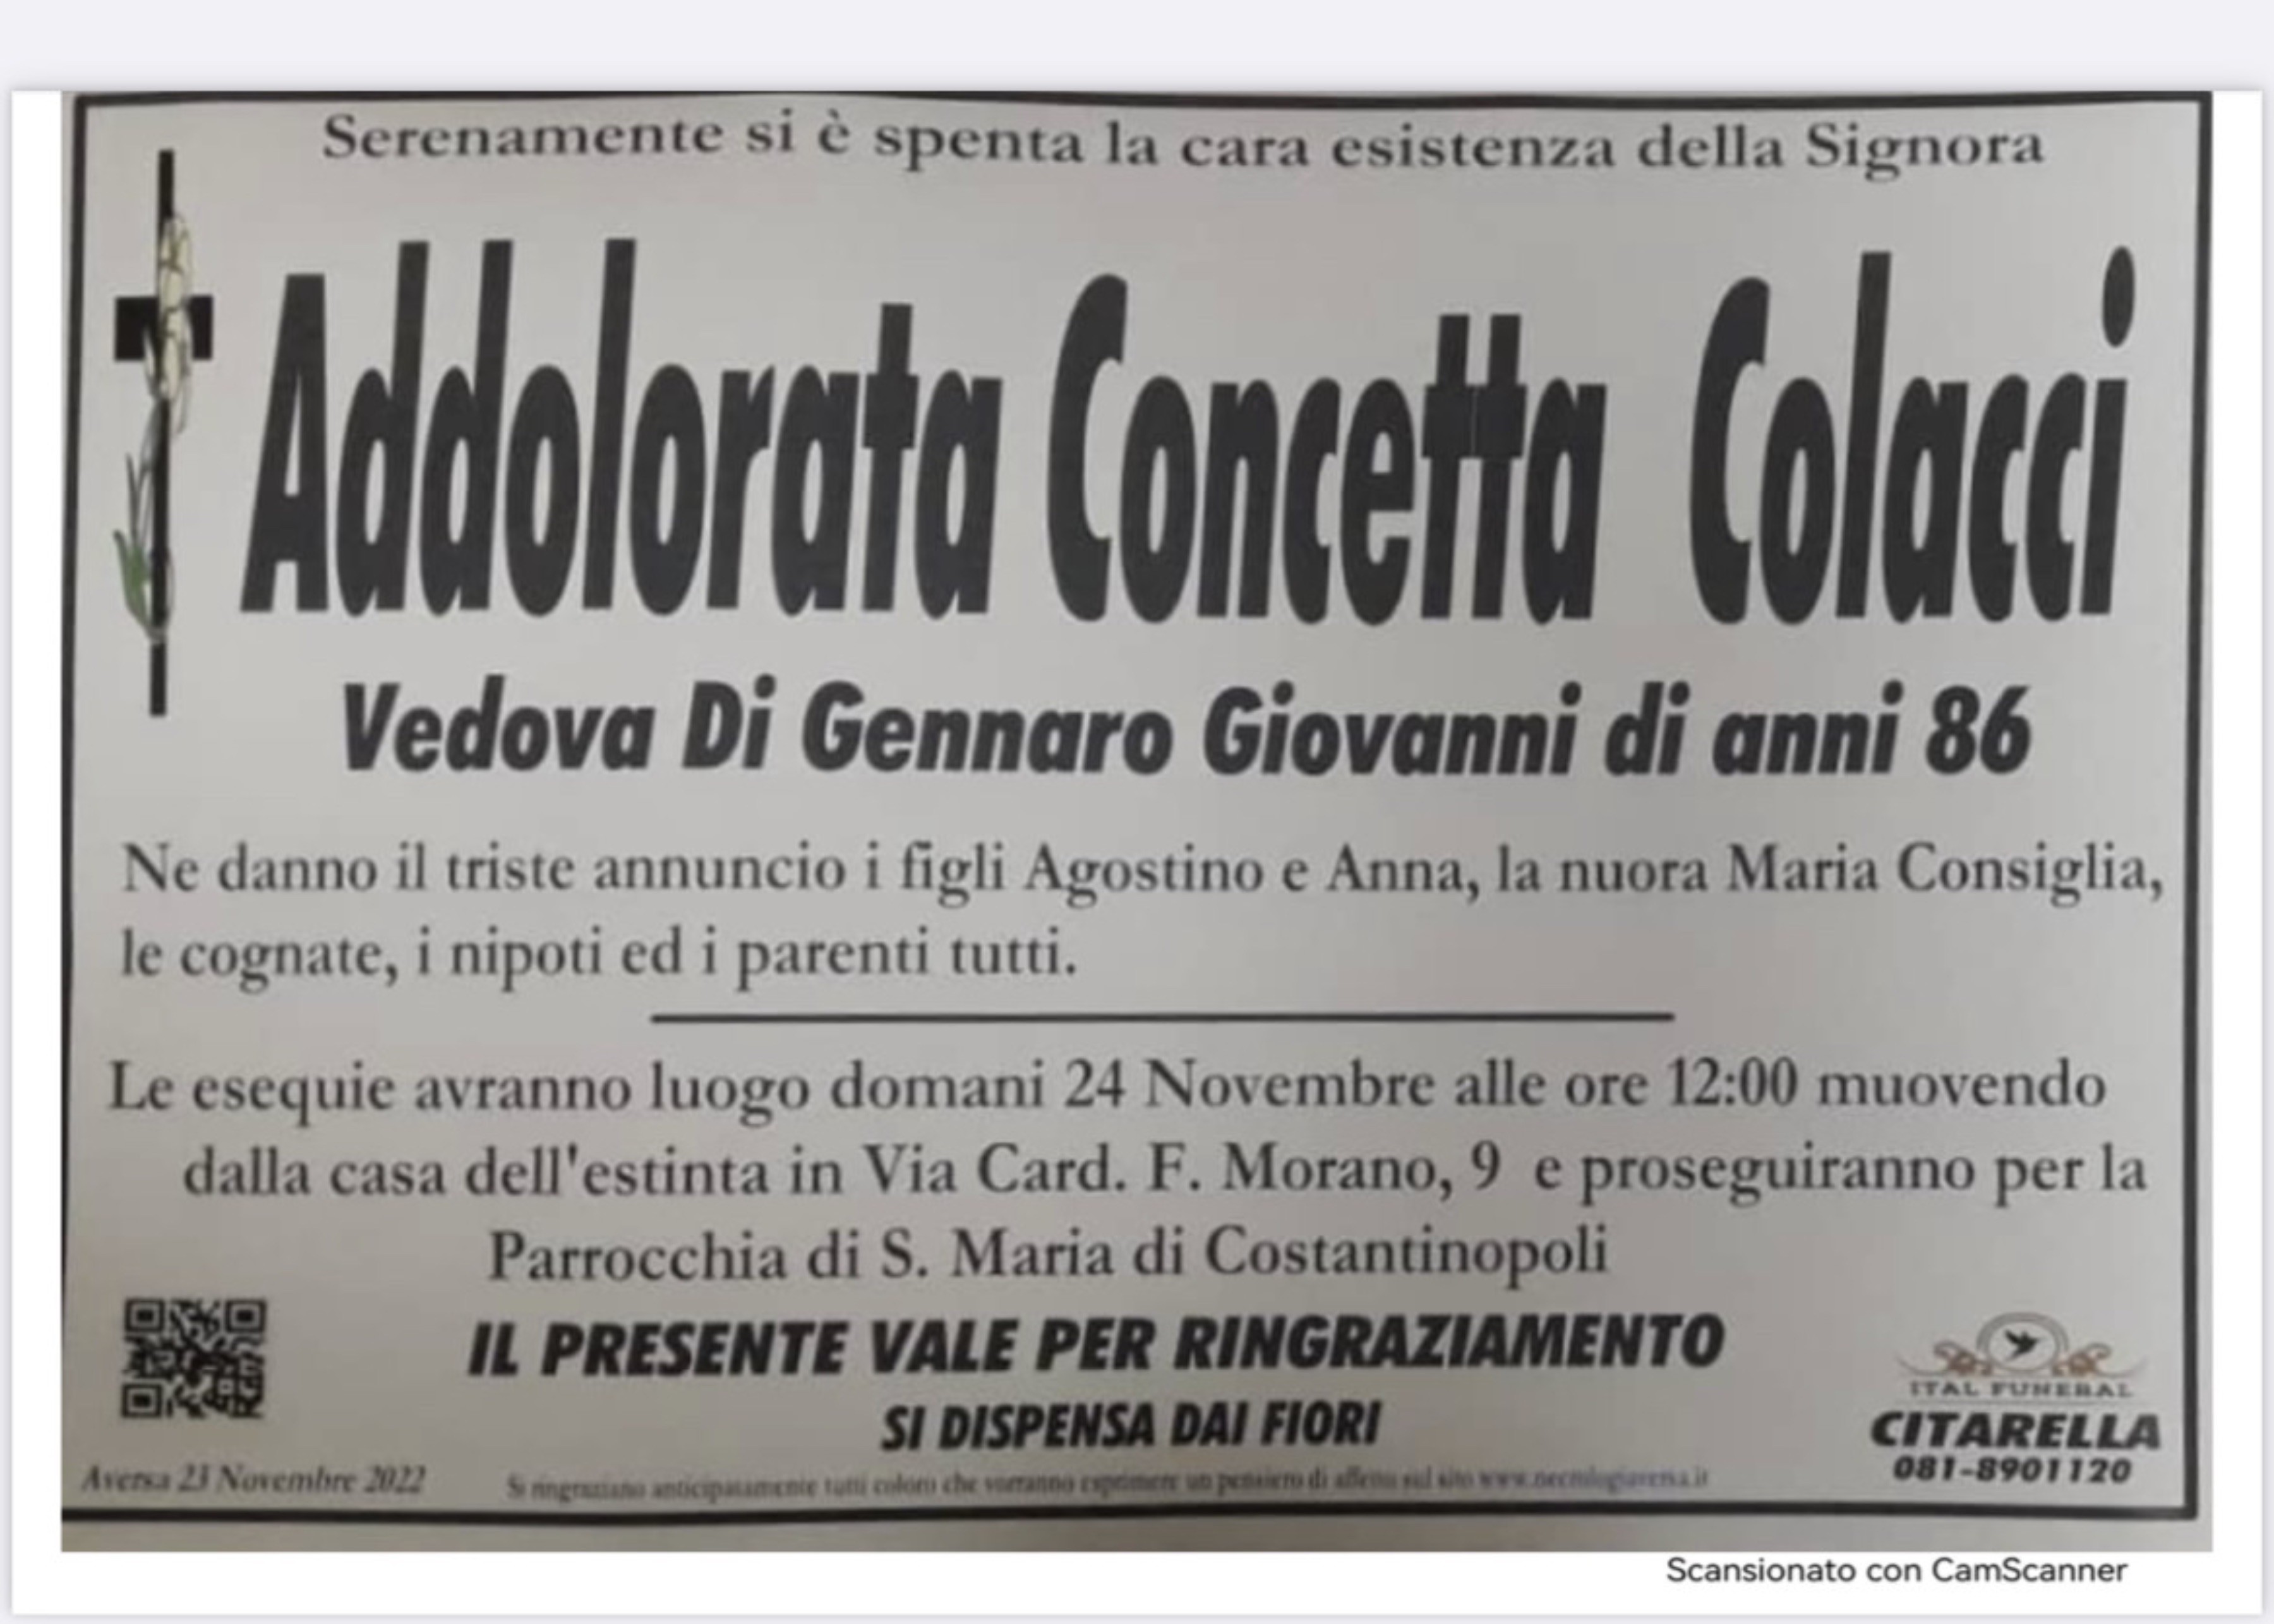 Addolorata Concetta Colacci